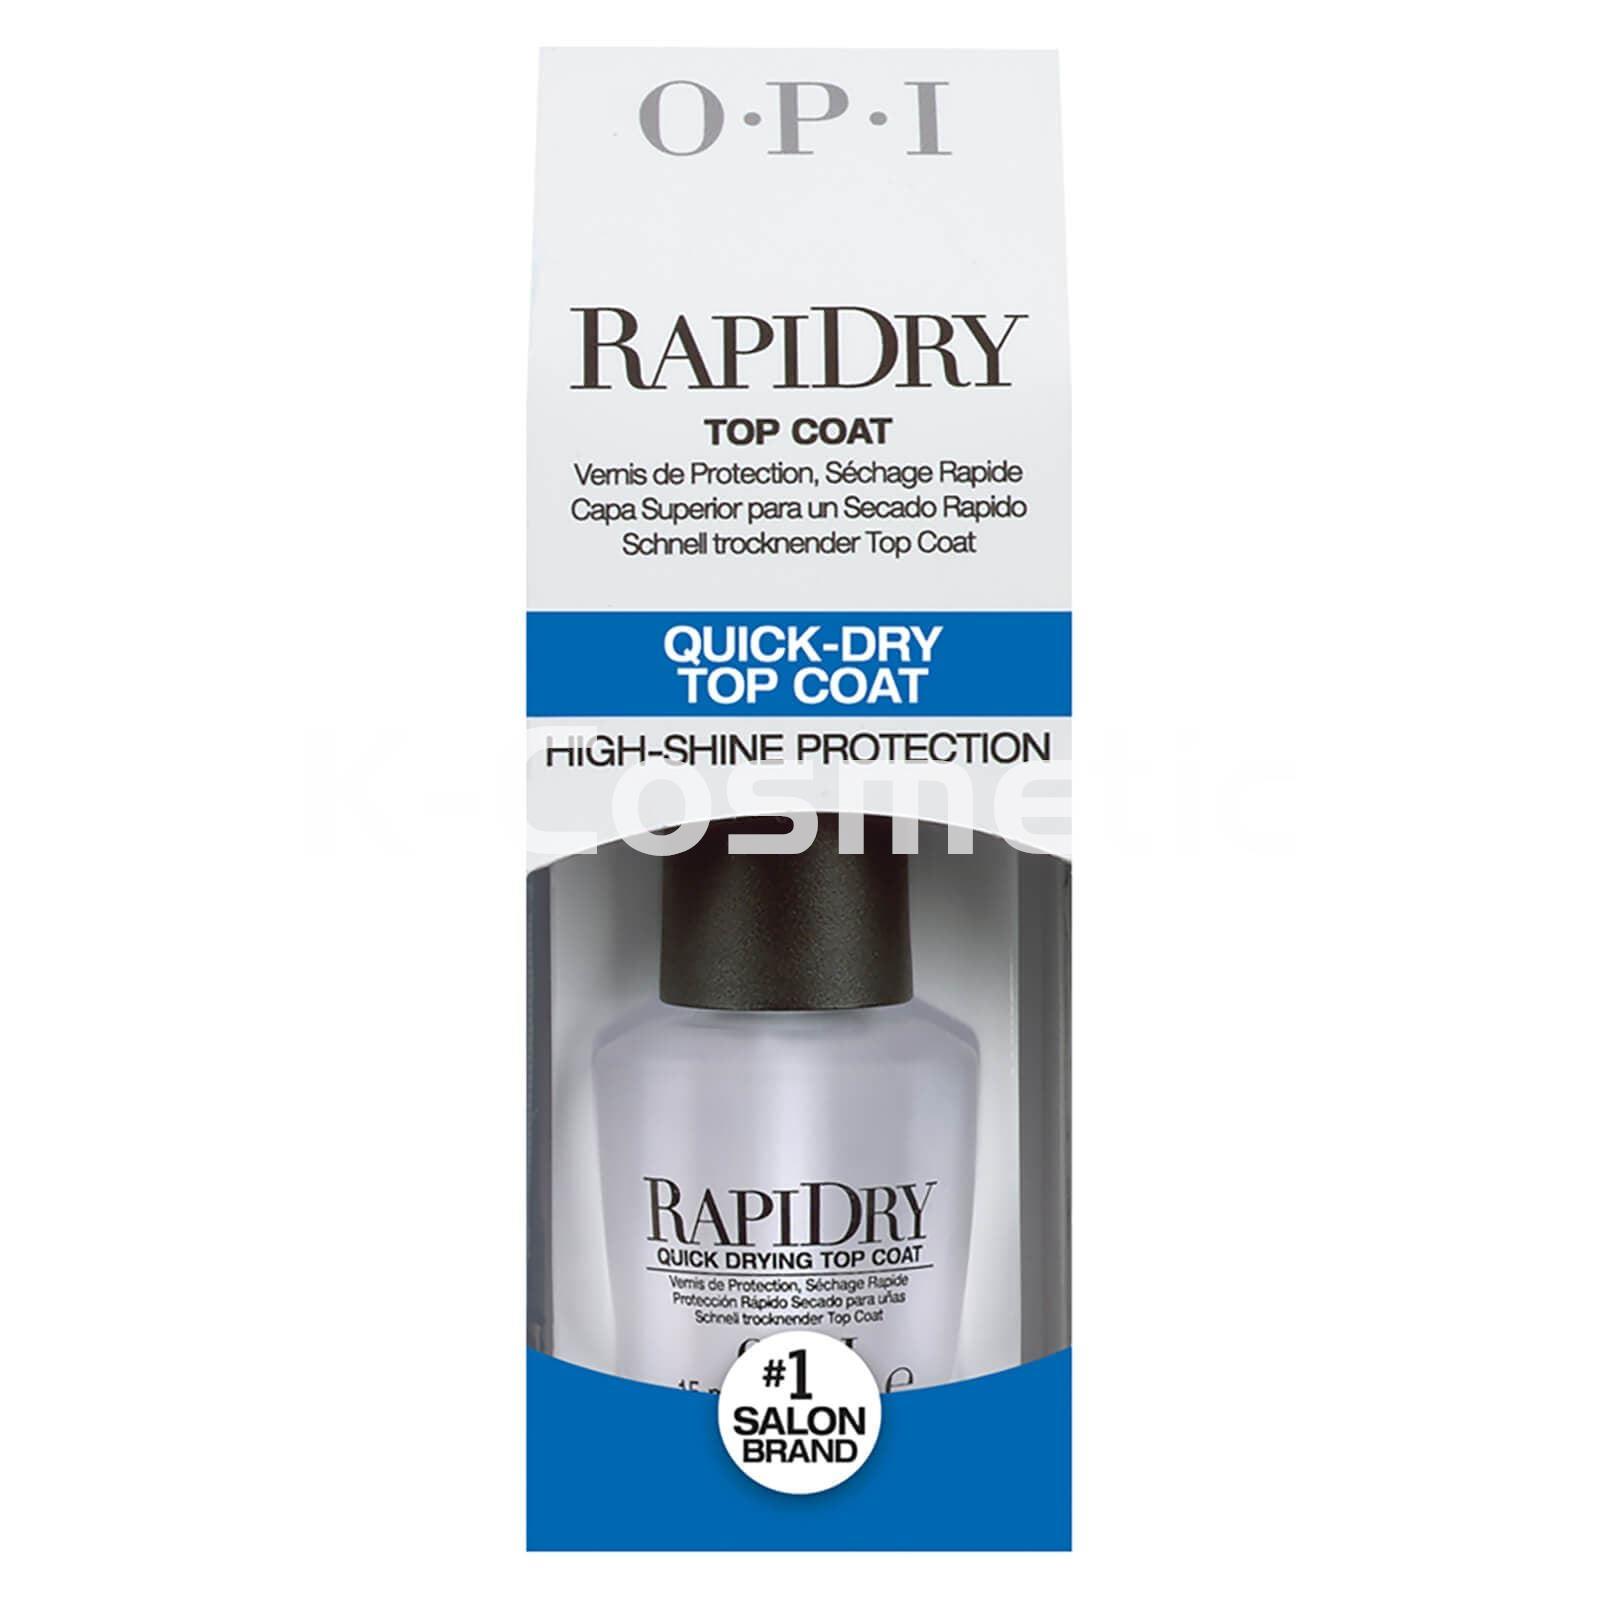 OPI RAPIDRY TOP COAT 15ML - Imagen 1